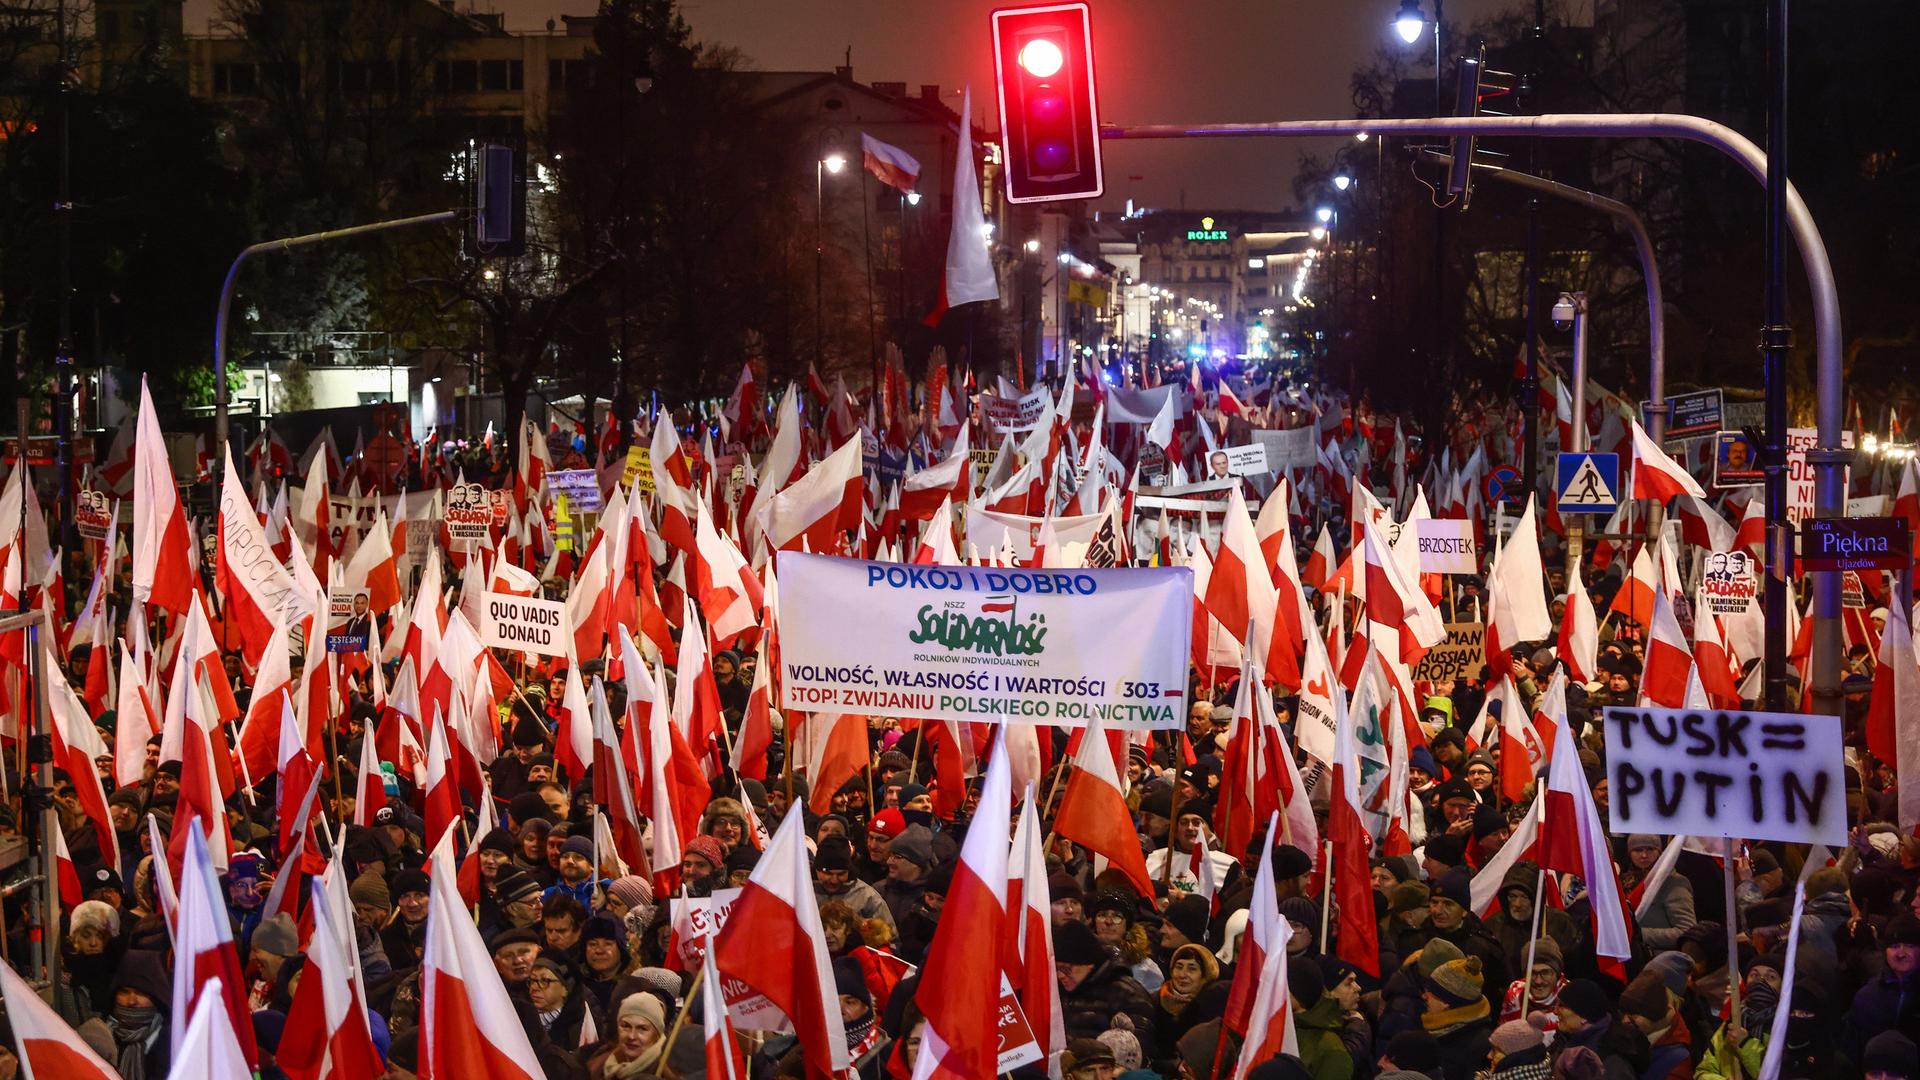 Tausende PiS-Anhänger schwenken die polnische Flagge und demonstrieren in Warschau gegen die aktuelle Regierung